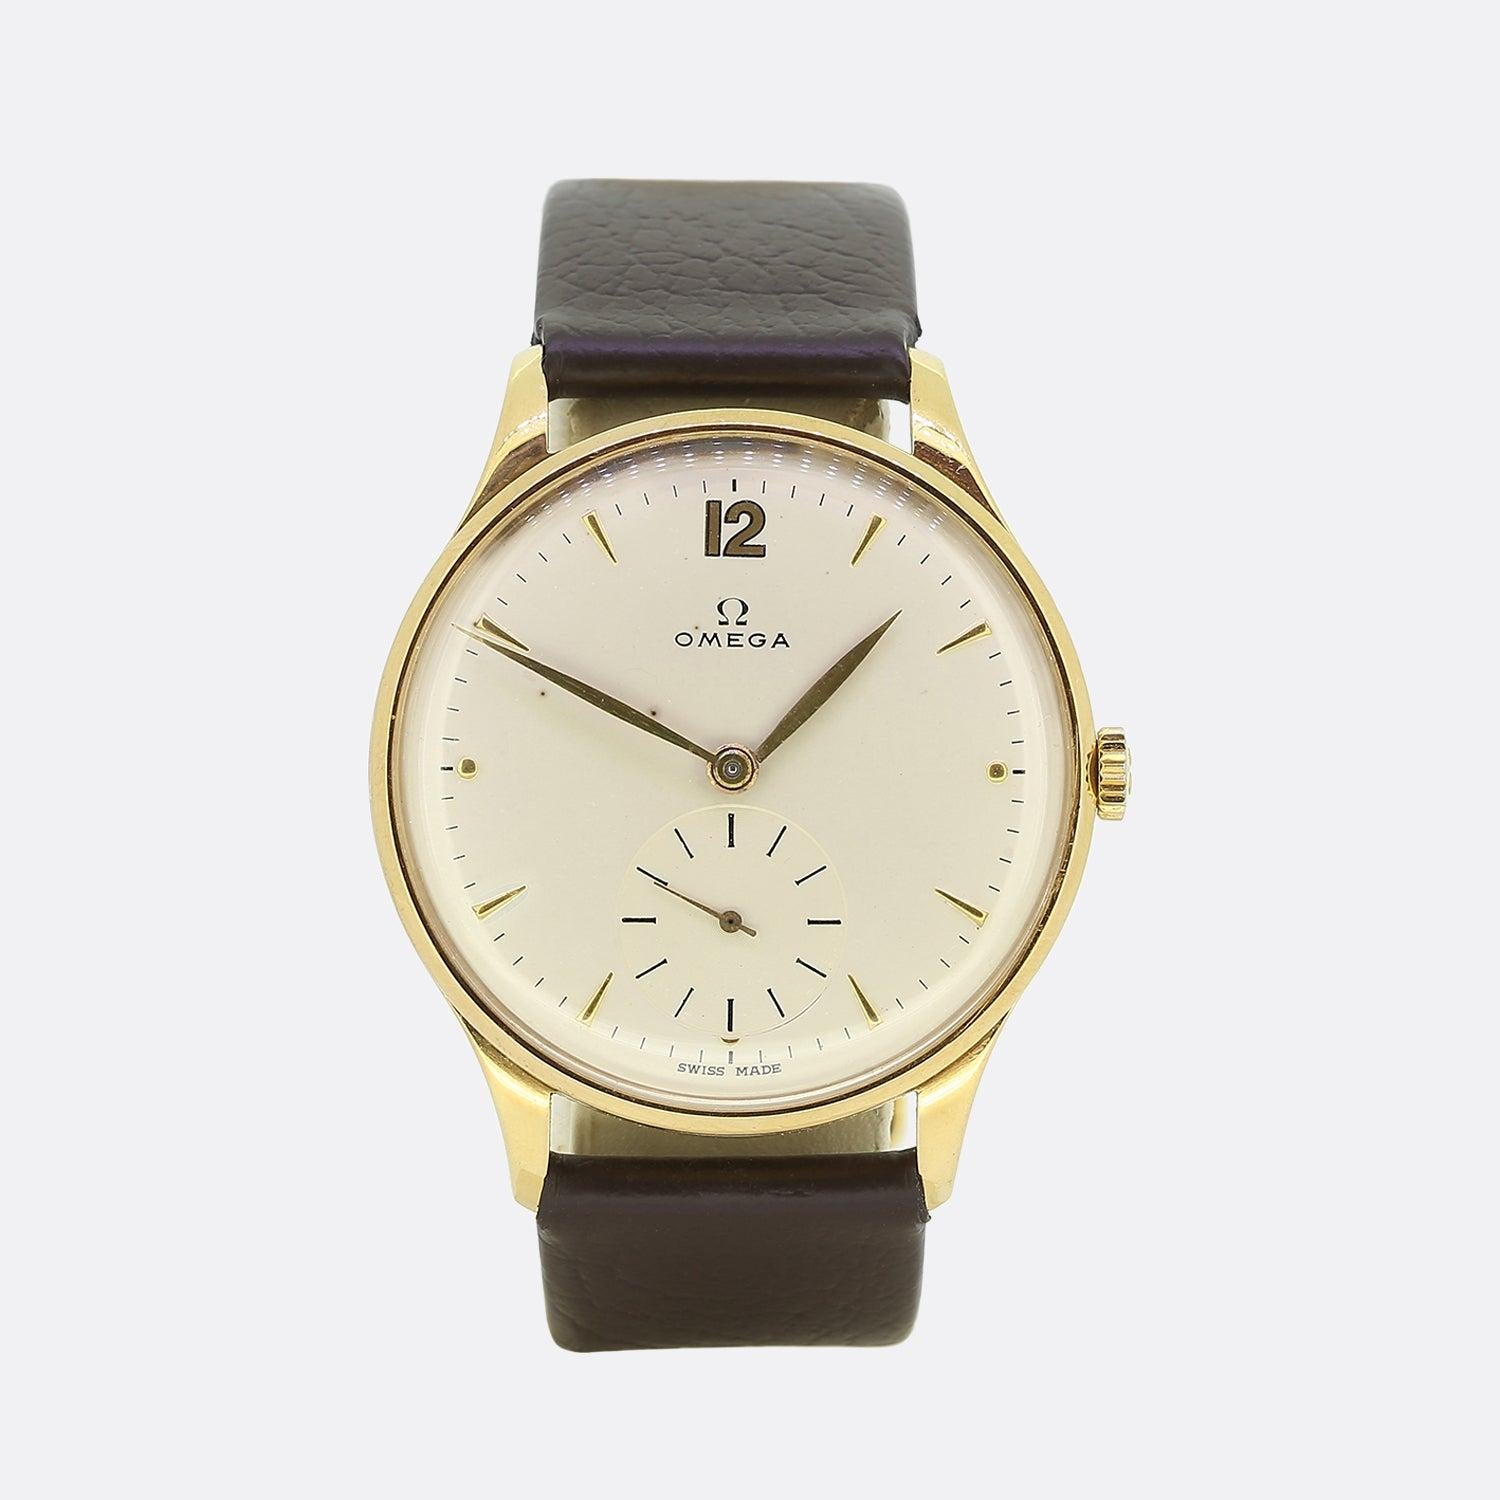 Il s'agit d'une montre-bracelet Omega vintage en or jaune 18ct pour homme. La montre présente toutes ses pièces d'origine, y compris le boîtier, le cadran et la couronne. Cependant, la boucle et le bracelet ont été remplacés à un moment donné.


Les